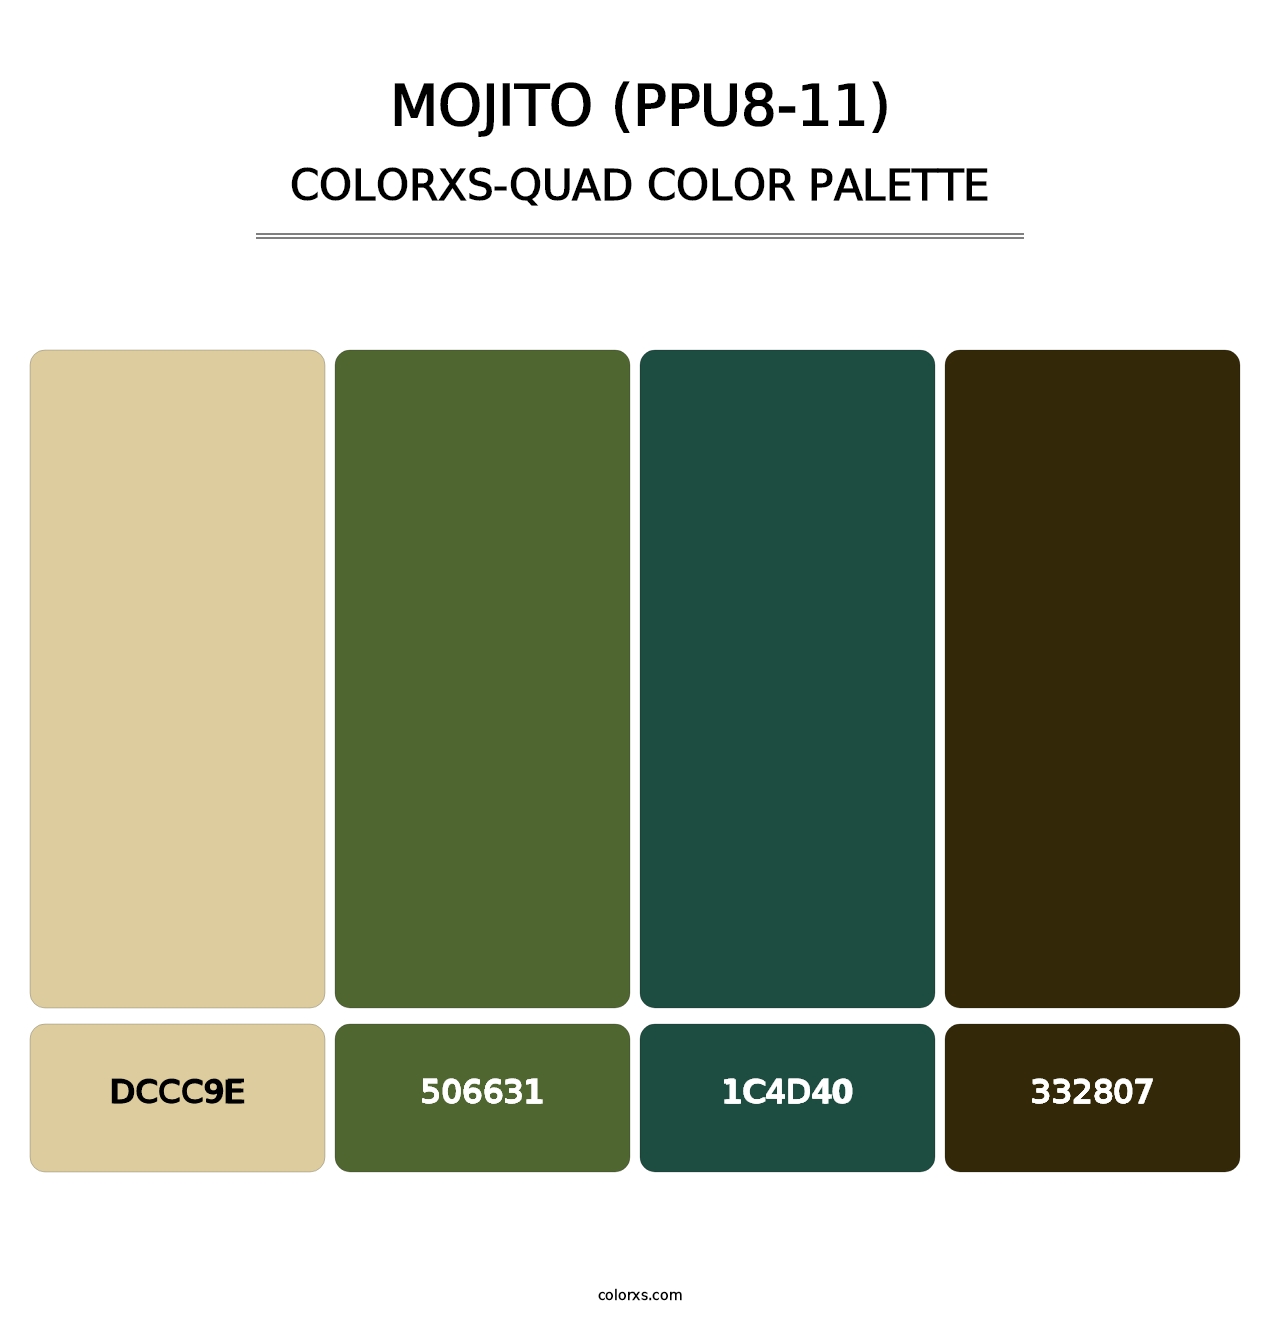 Mojito (PPU8-11) - Colorxs Quad Palette